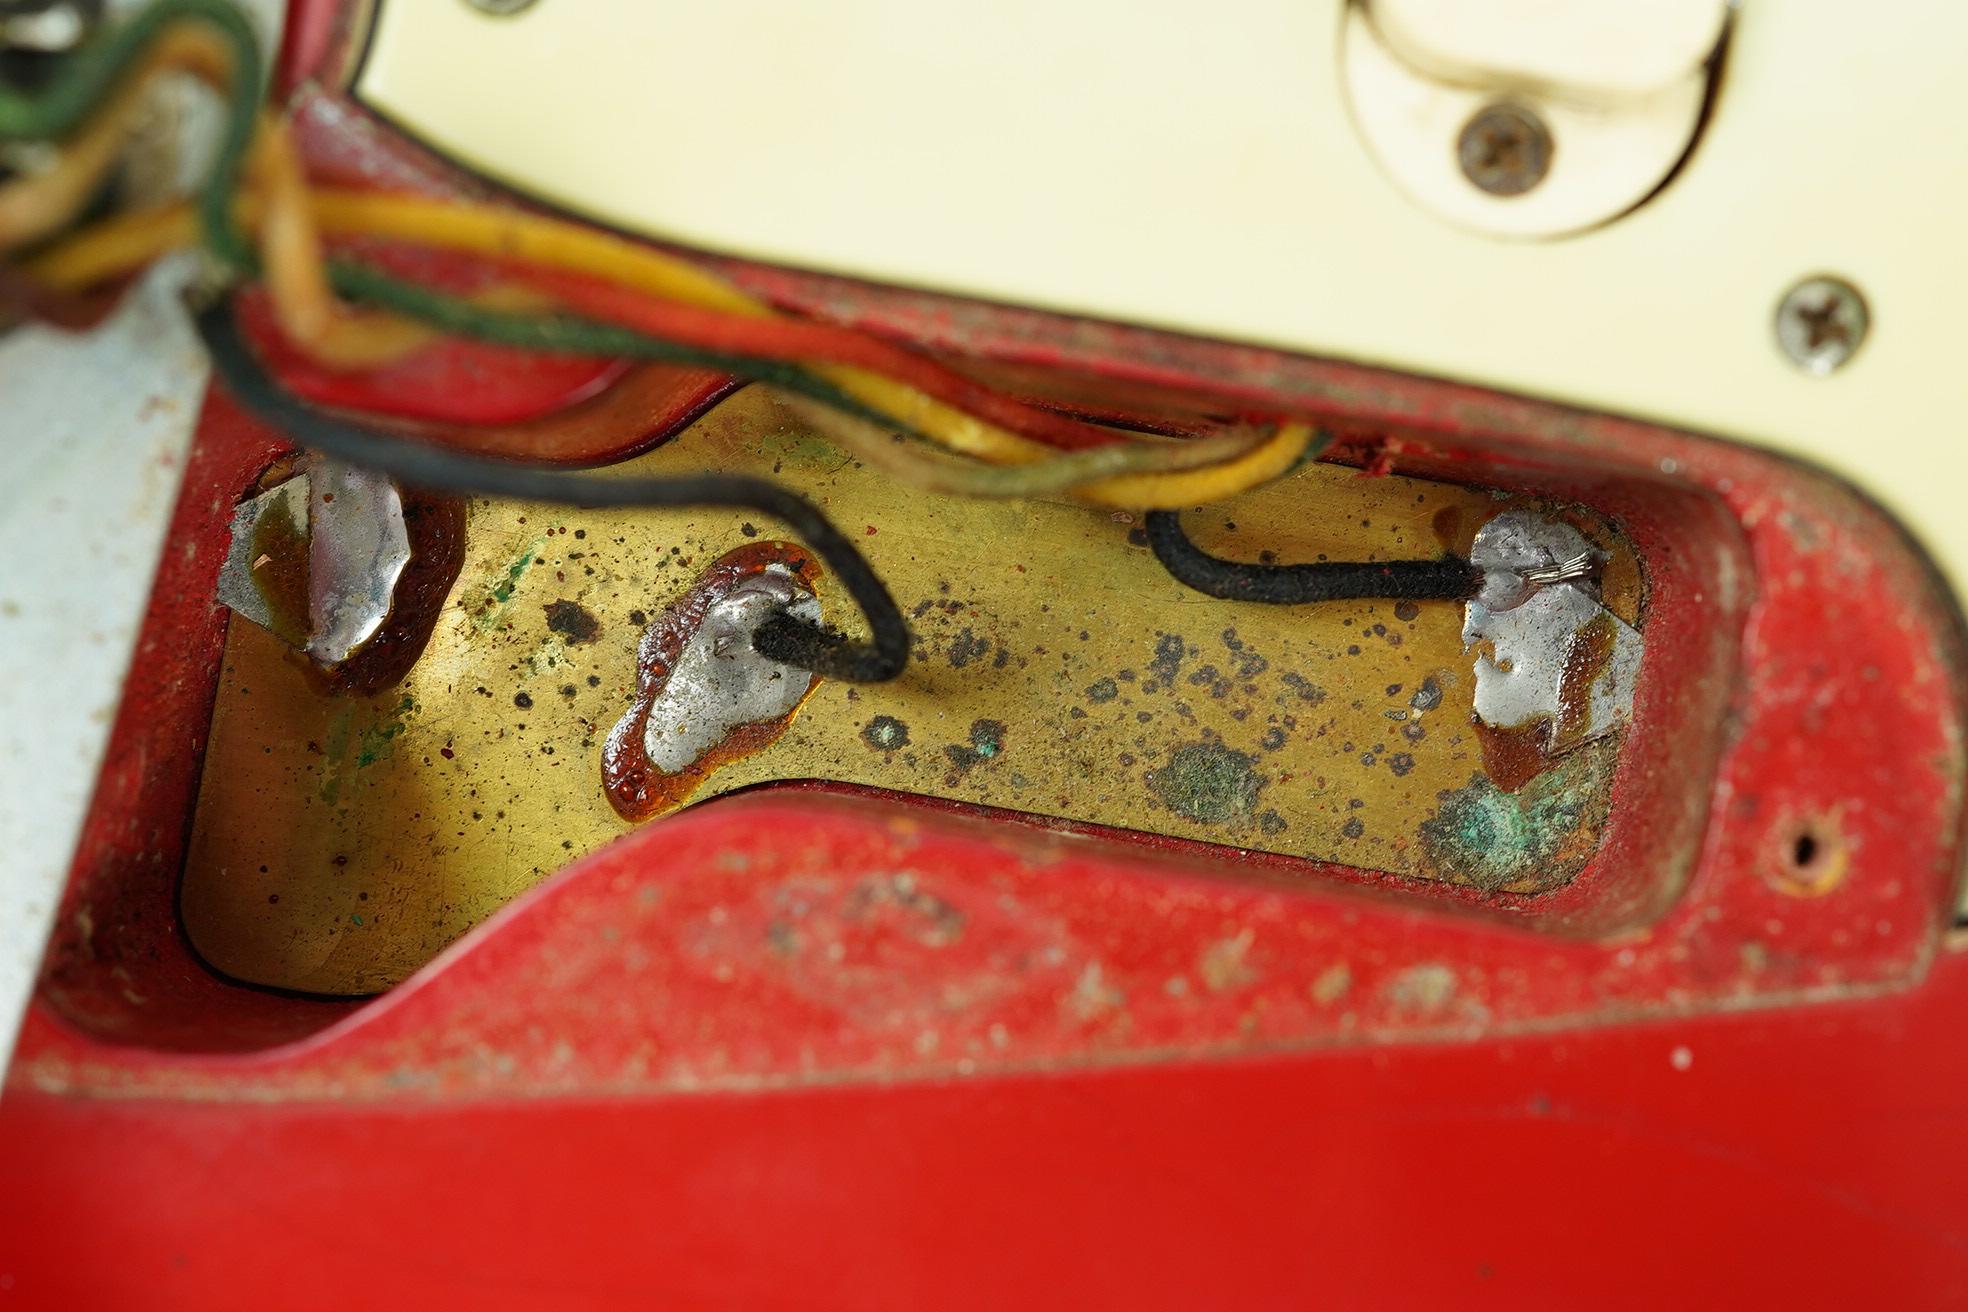 1964 Fender Jaguar Dakota Red